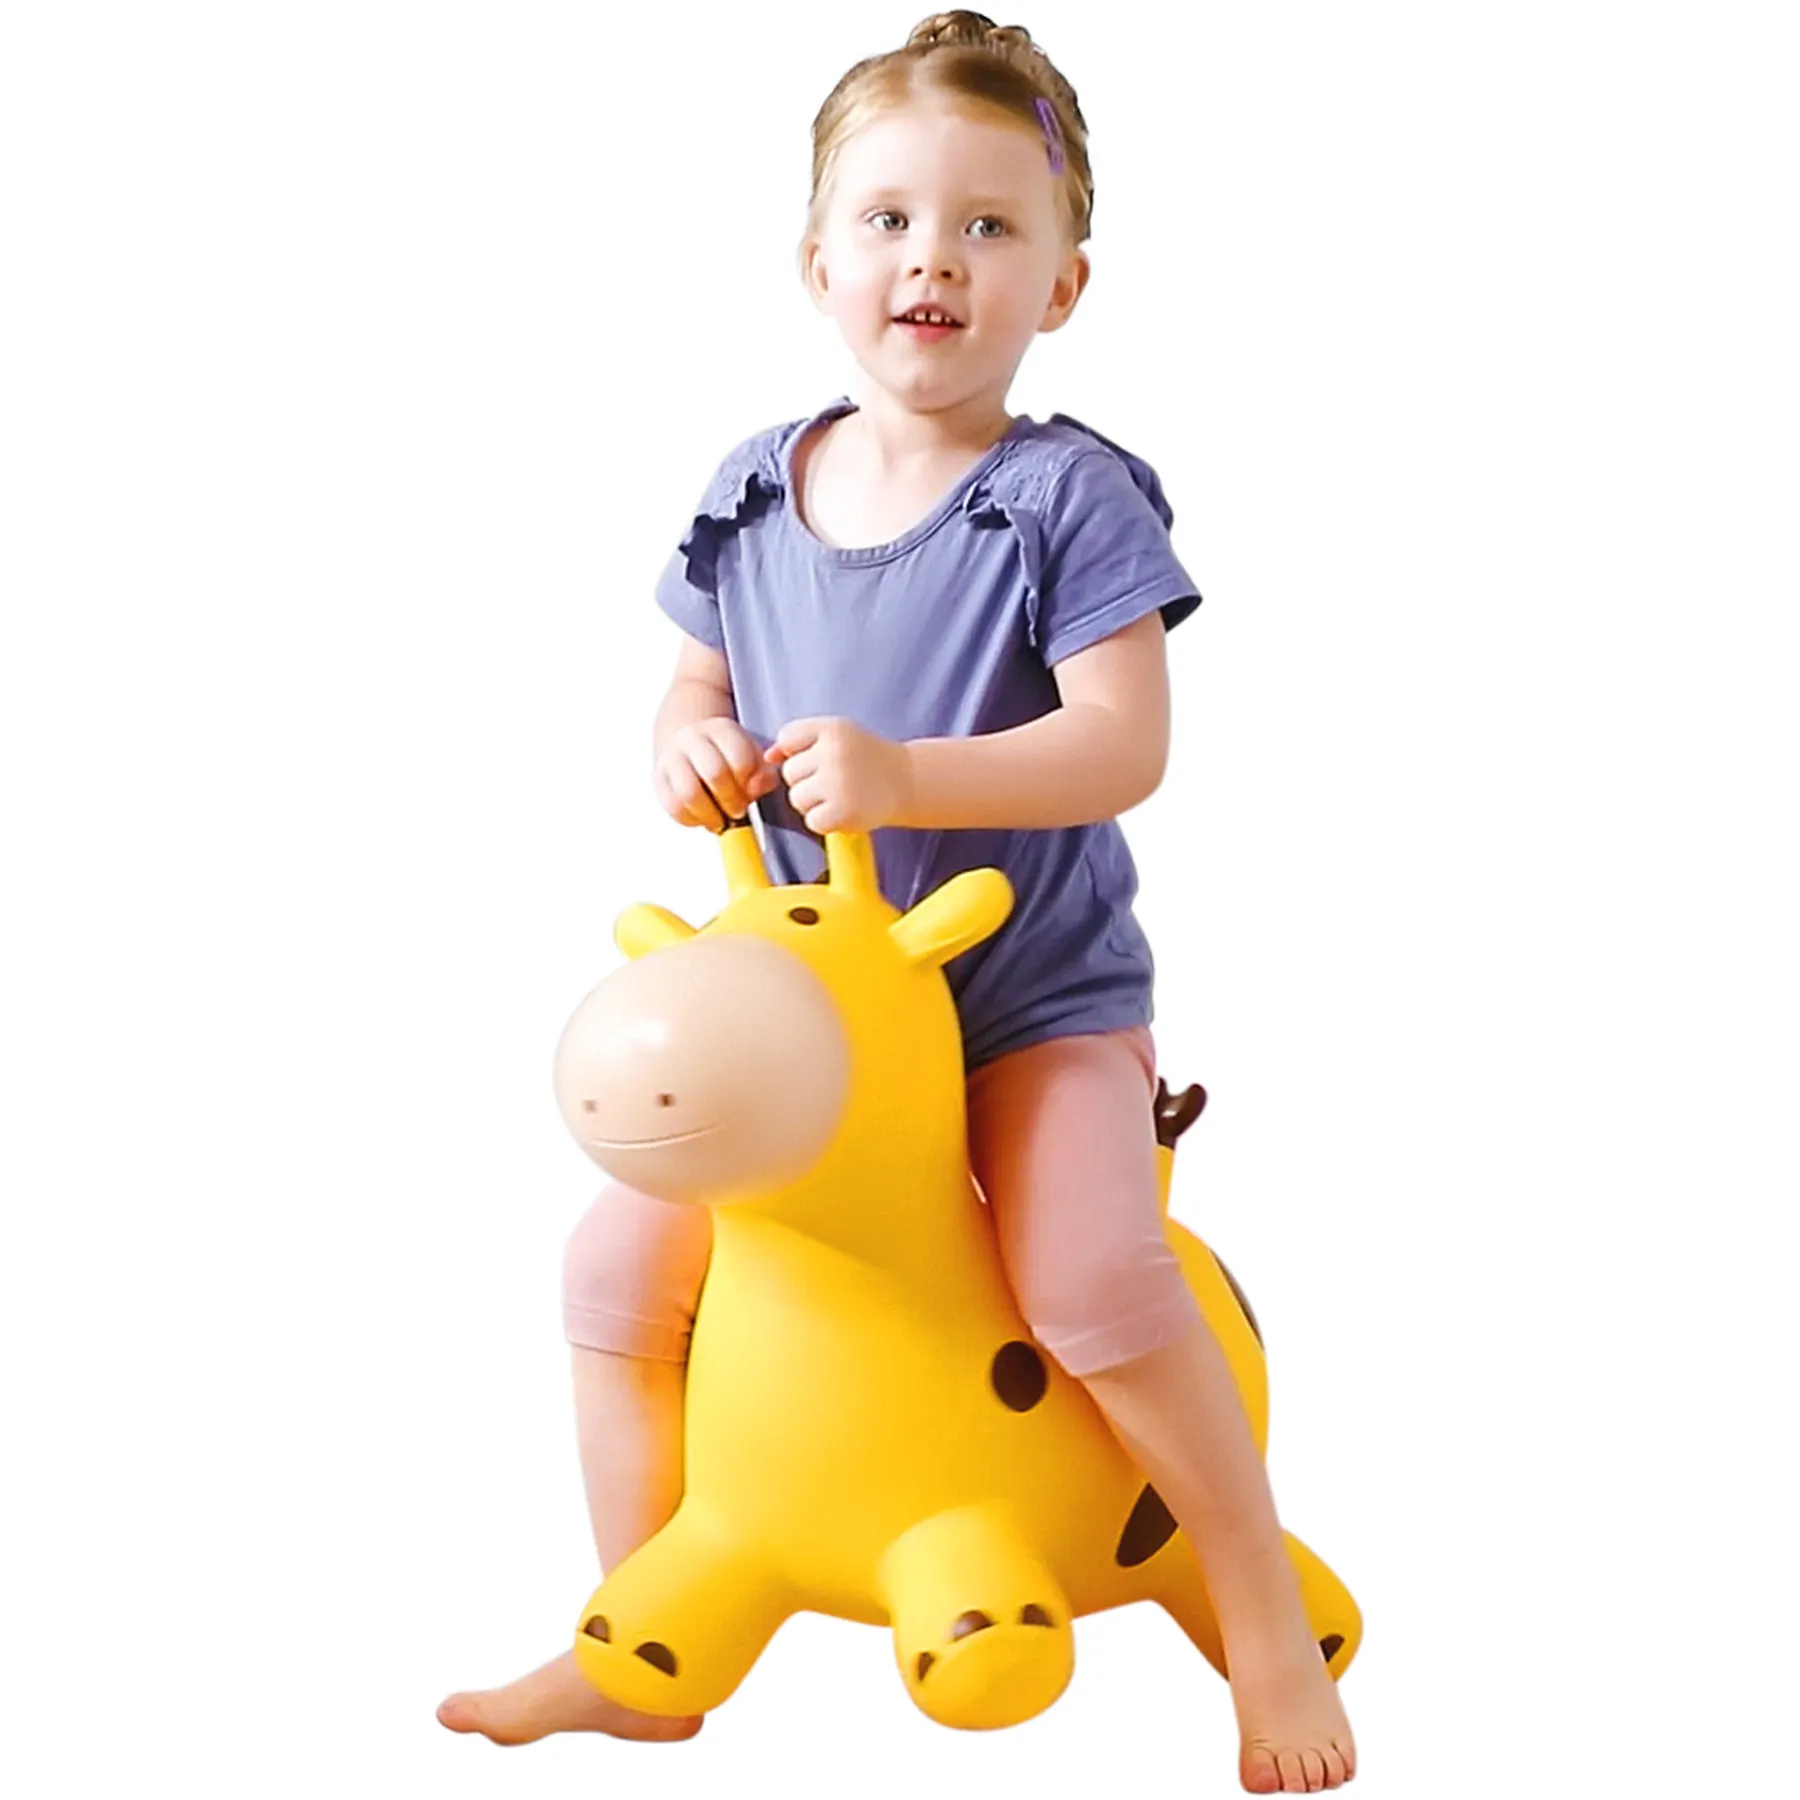 Tolva de salto inflable para niños pequeños, juguete para niños que montan en animales que rebotan de goma, tolva de jirafa hinchable